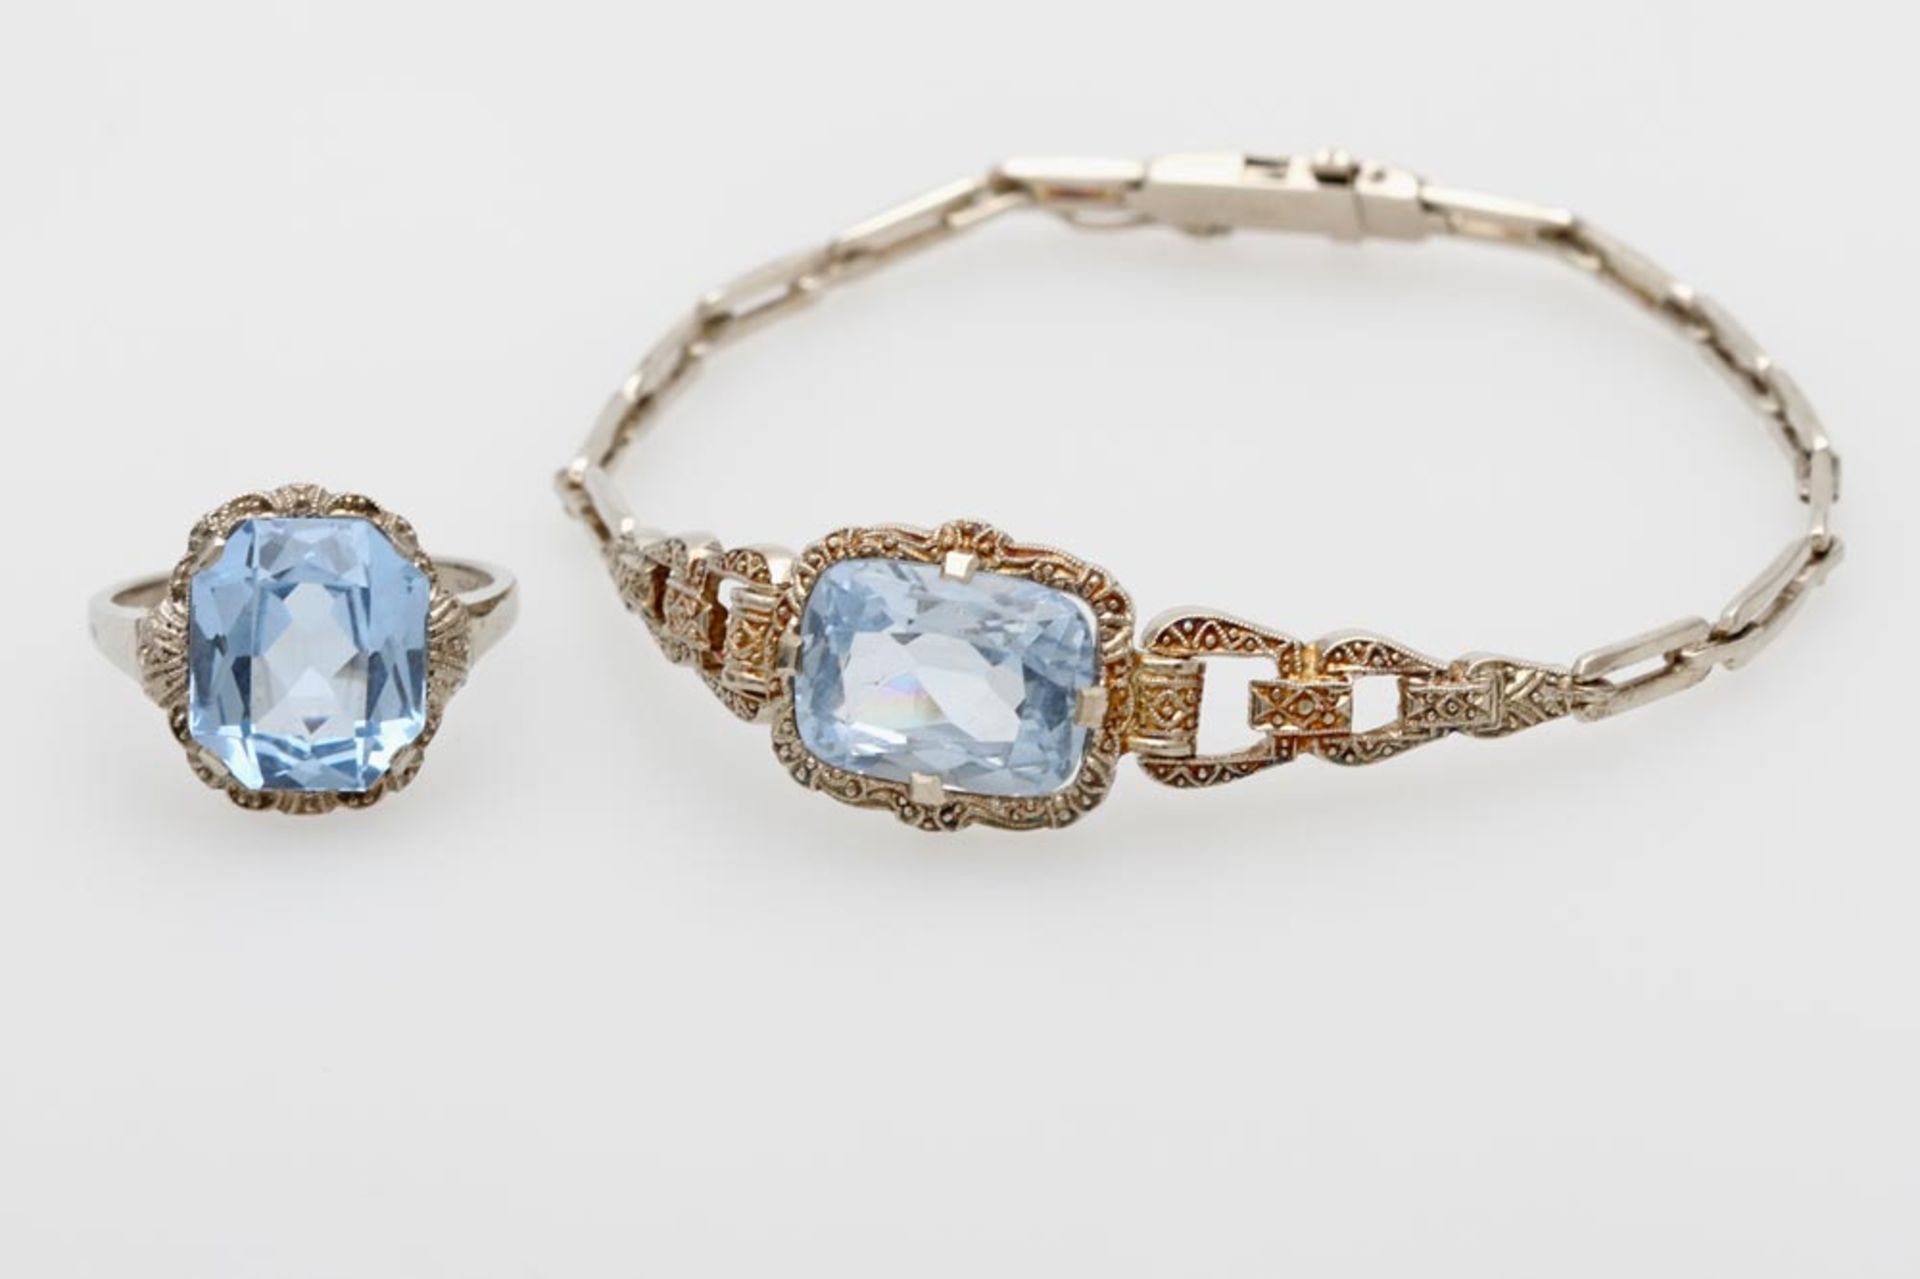 Set, 2tlg.: 1 Armband u. 1 Ring besetzt mit einem fac. blauen Stein. SILBER. 1920er Jahre. Ringgr.